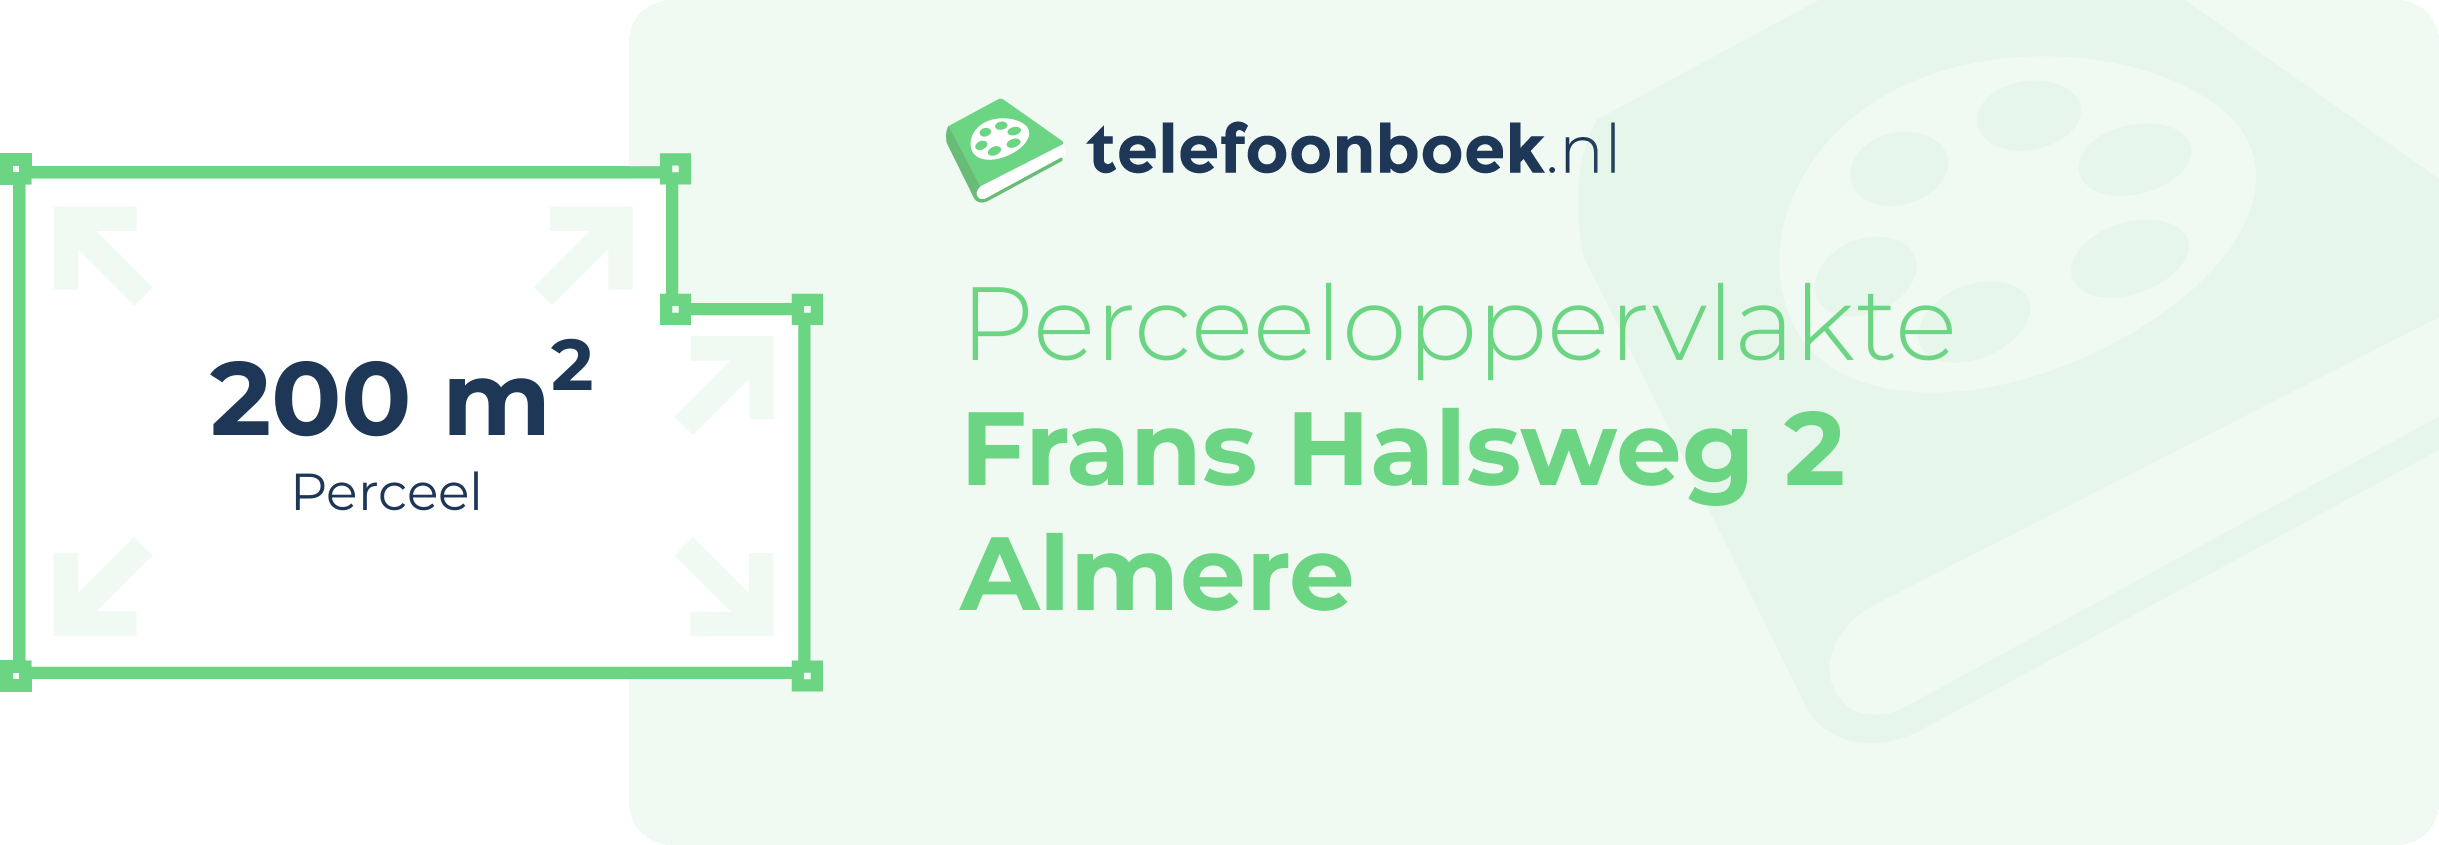 Perceeloppervlakte Frans Halsweg 2 Almere